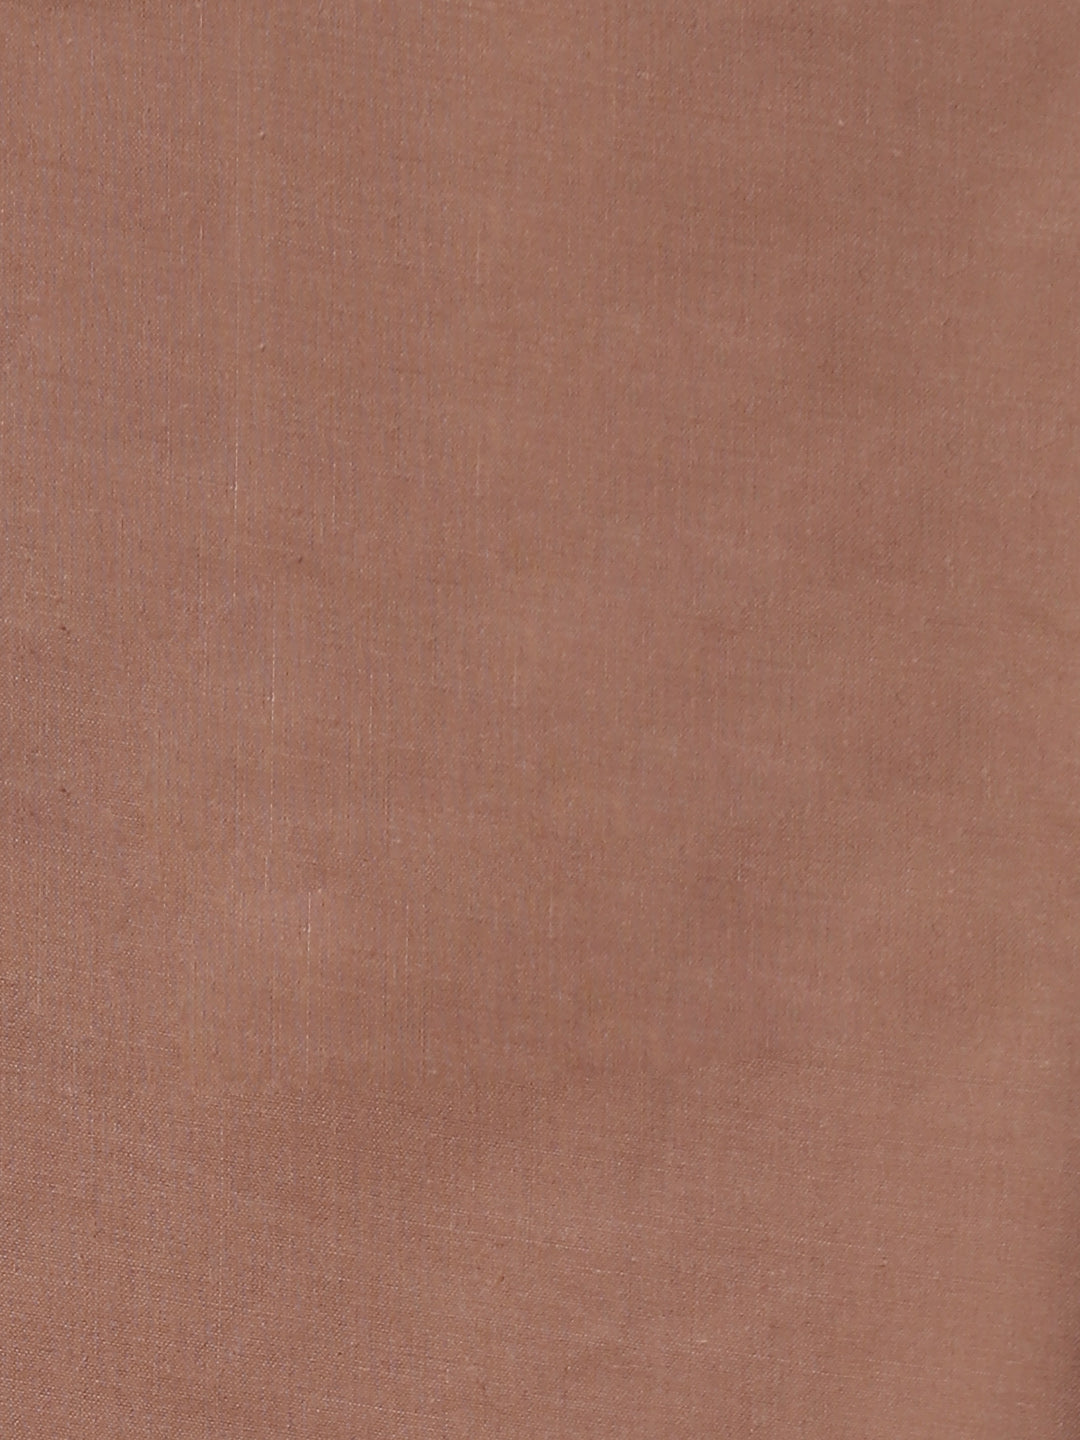 Woven Cotton Unstitched Suit Piece With Dupatta